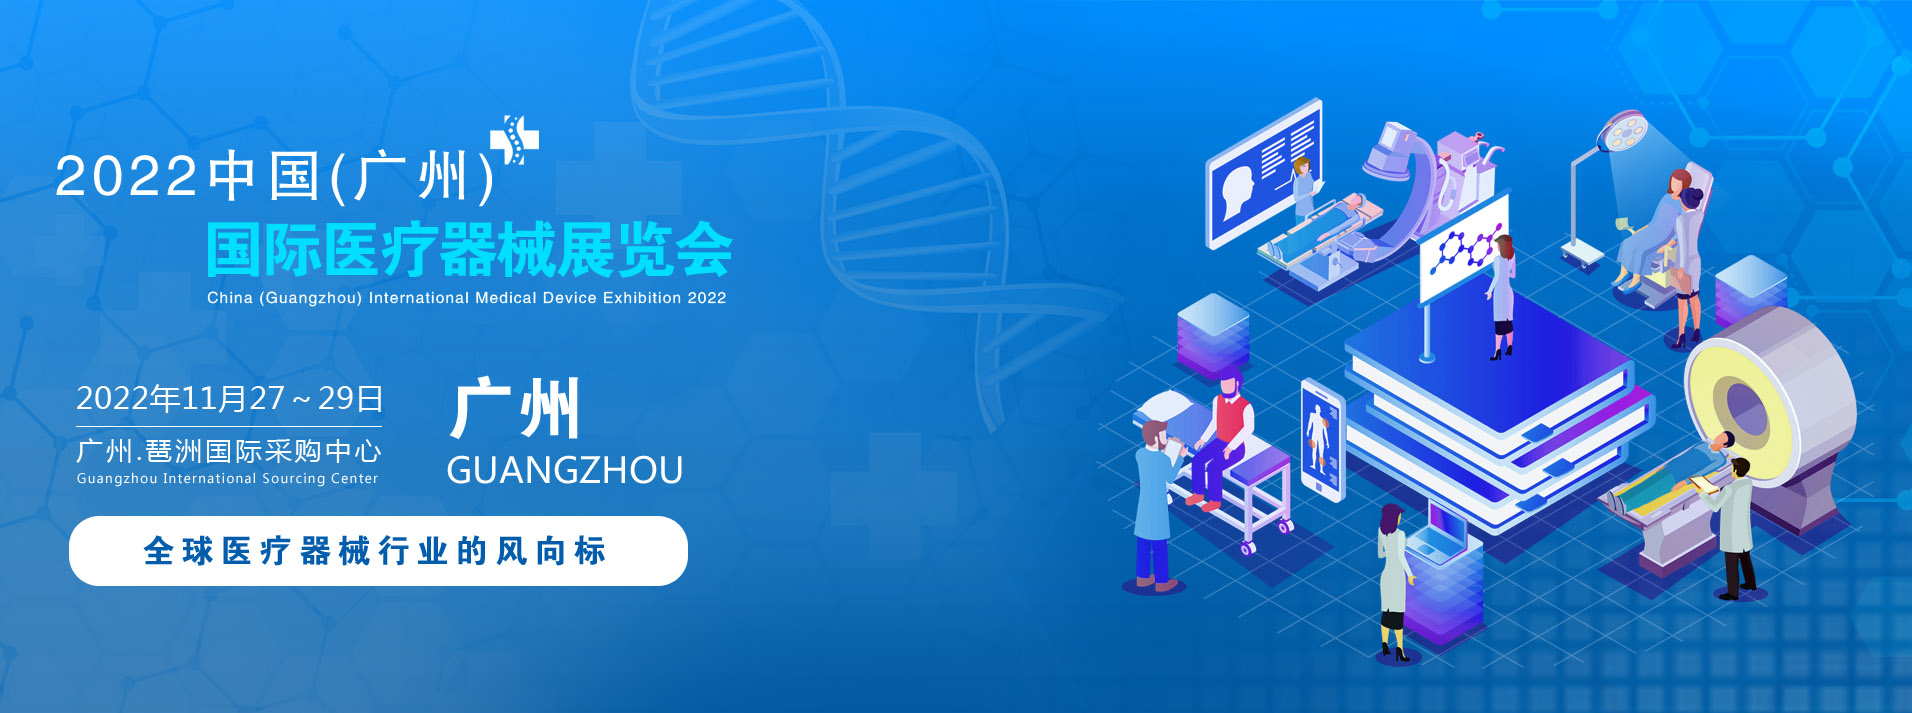 2022中国(广州)国际医疗器械展览会.jpg